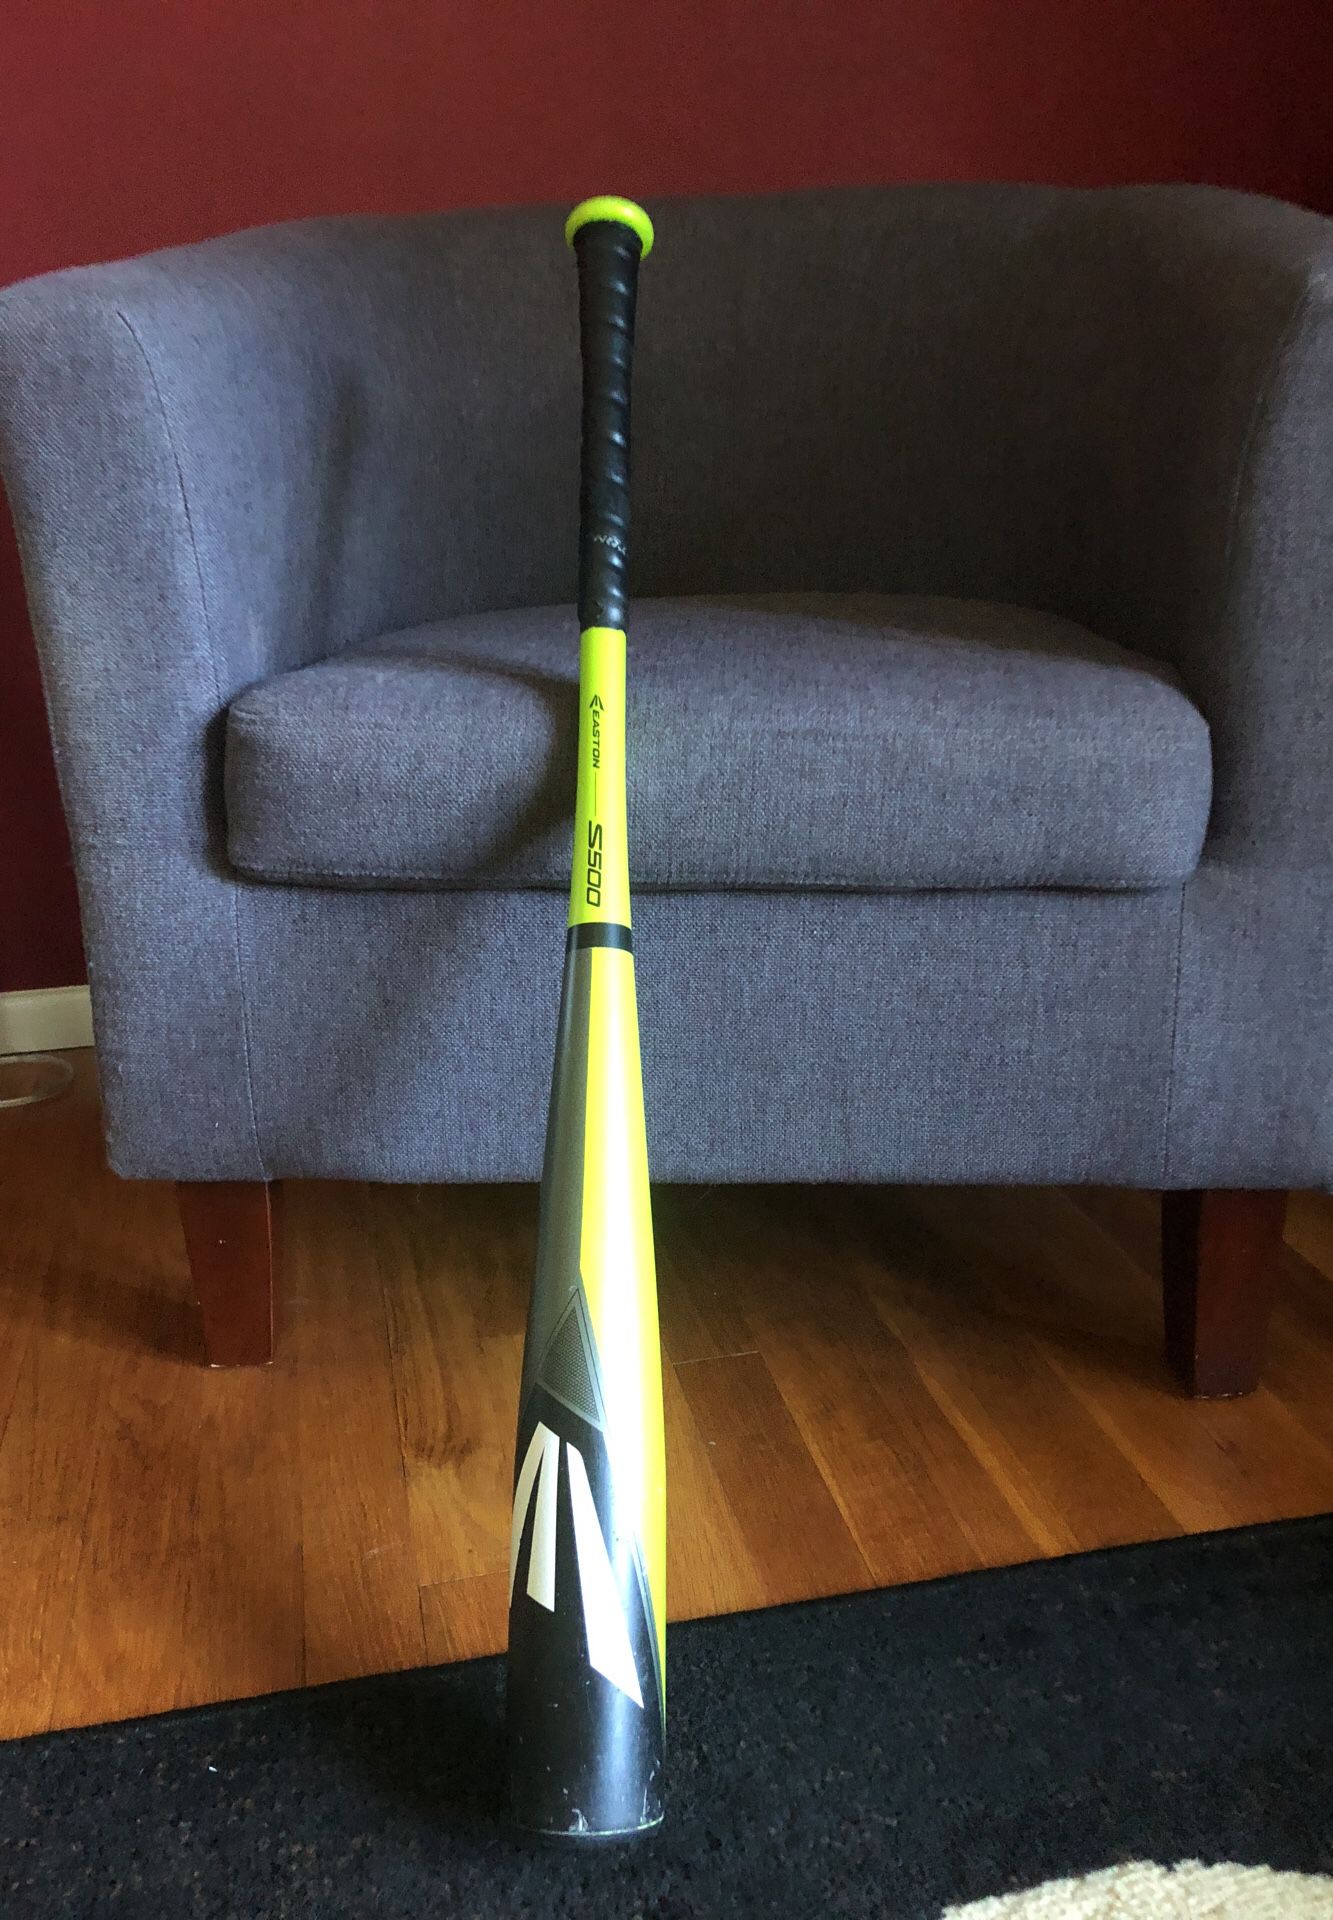 Easton S500 31”28oz bbcor bat